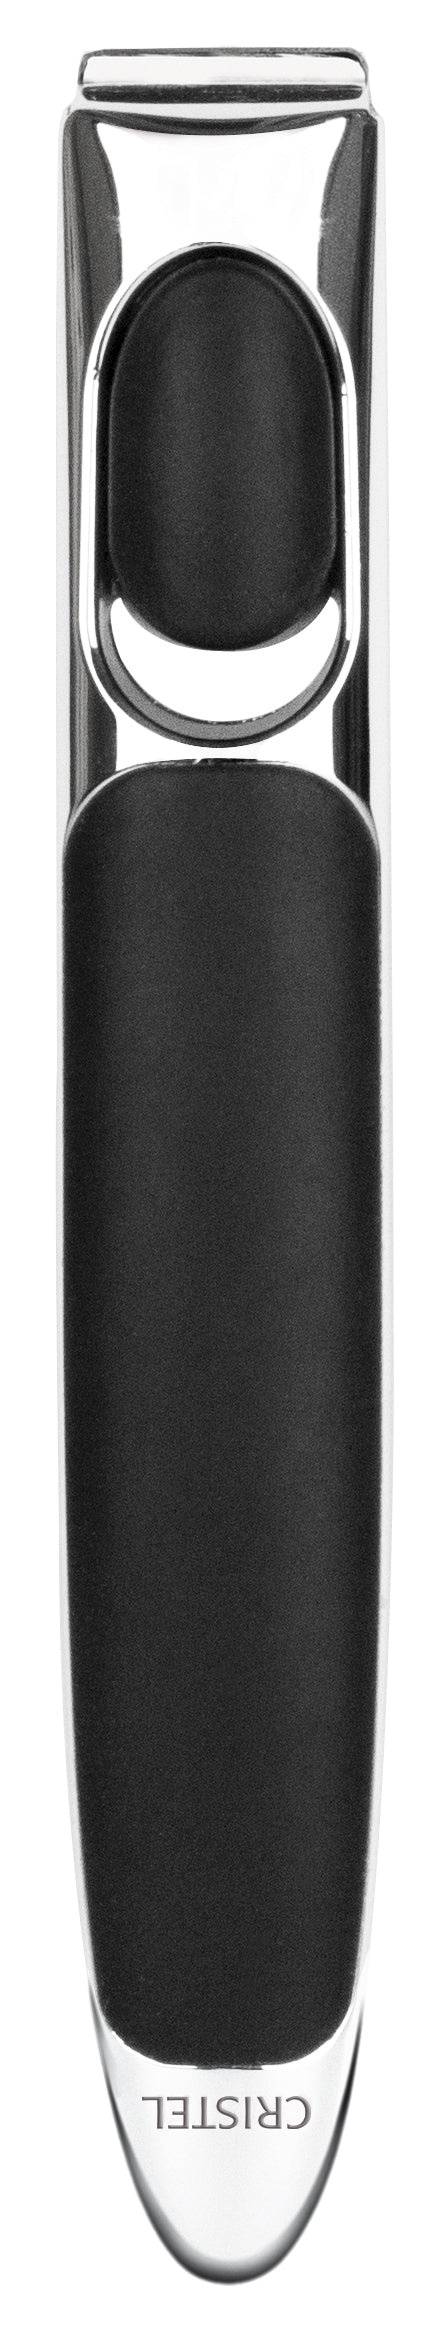 Poignée amovible Zenith 3 en inox brossé et silicone noir | CRISTEL